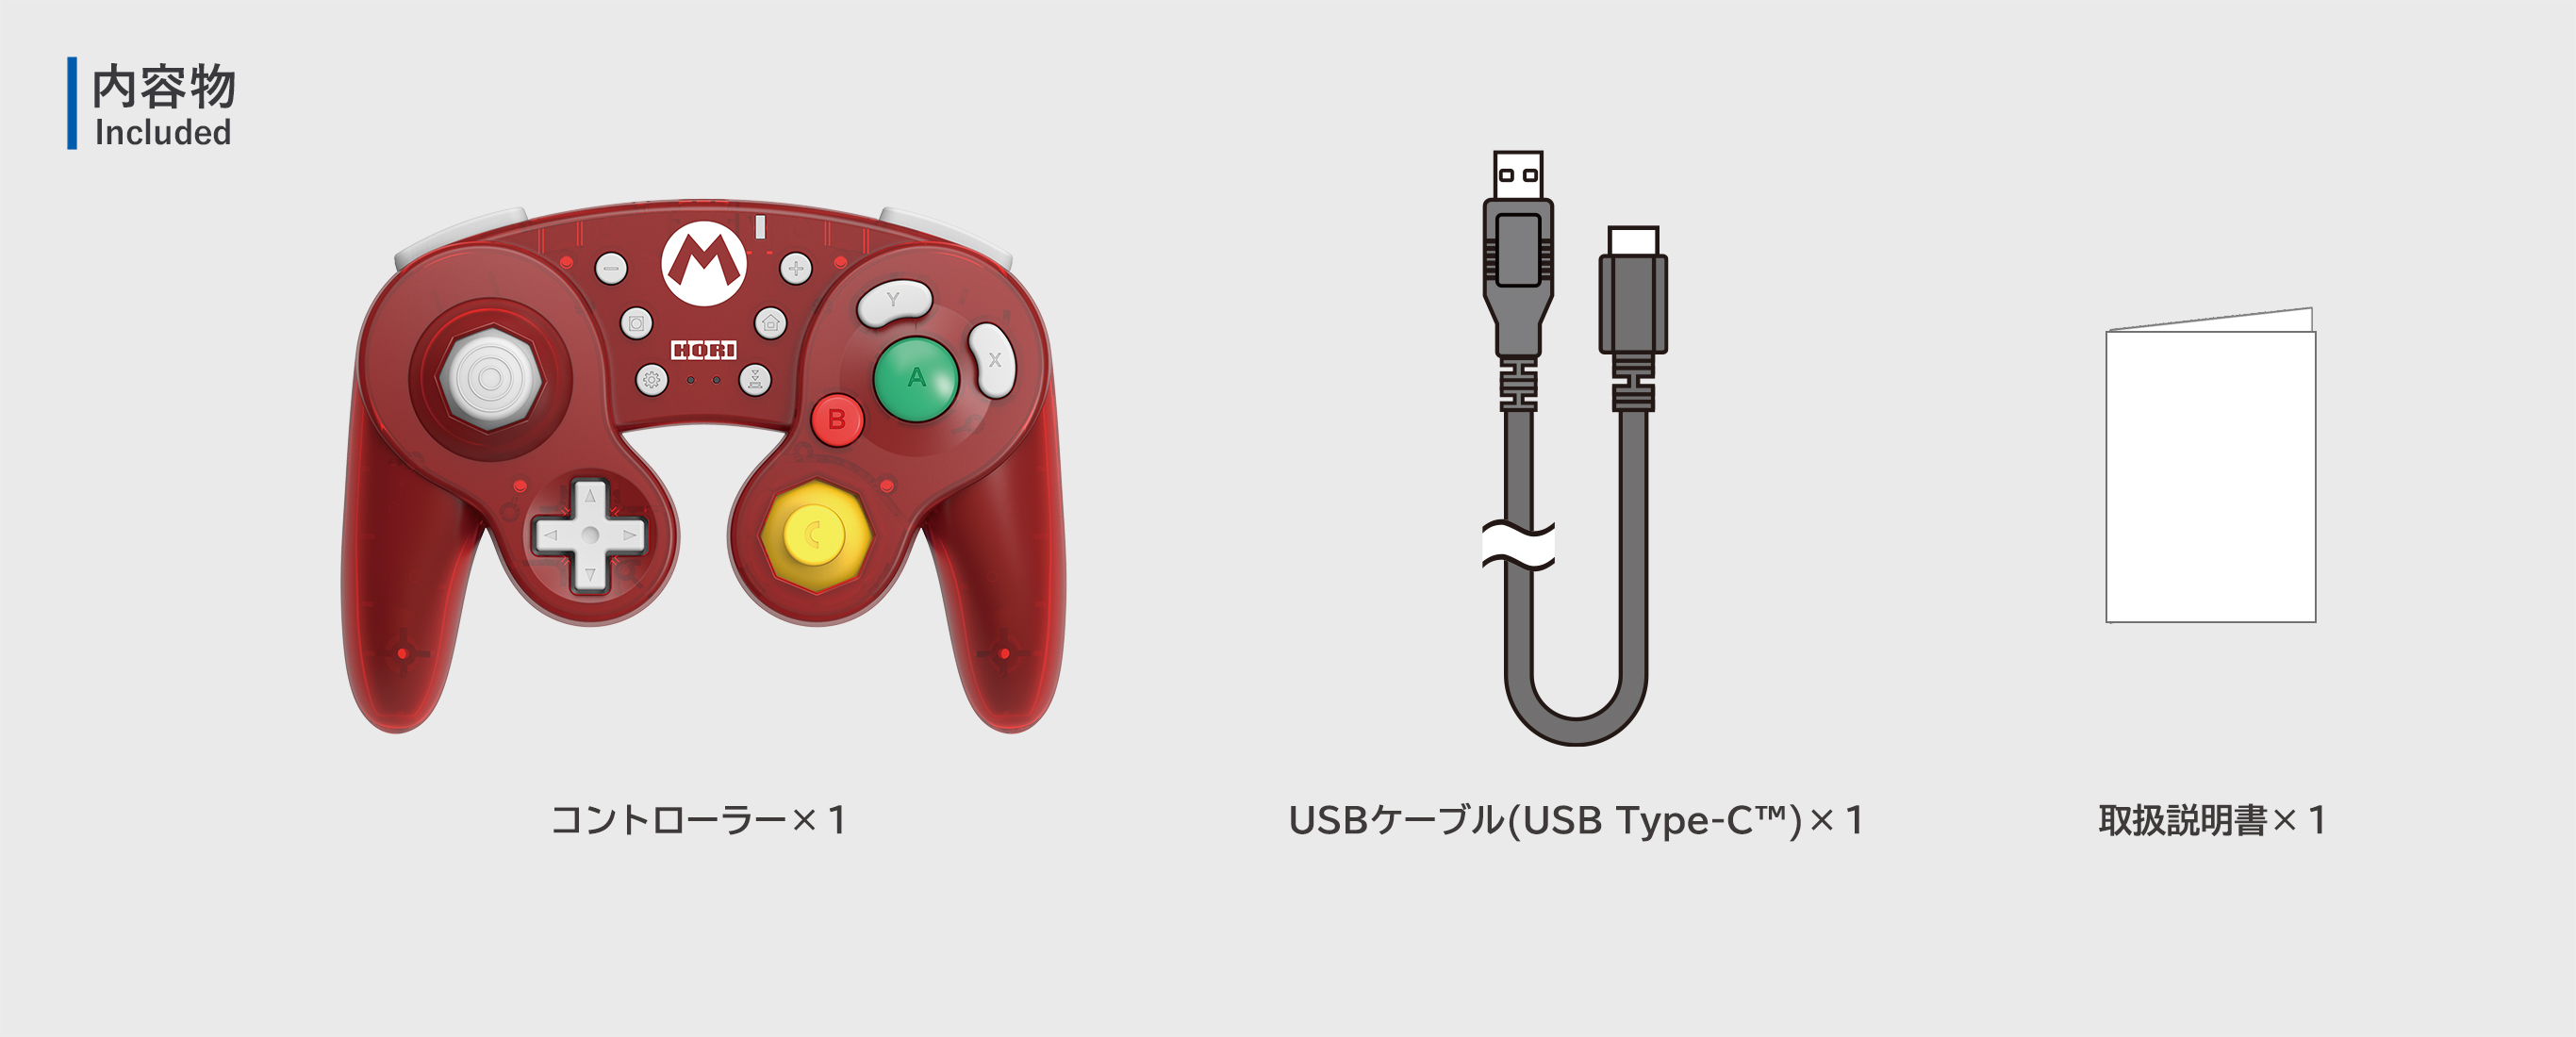 株式会社 HORI ホリ ワイヤレスクラシックコントローラー for Nintendo Switch スーパーマリオ